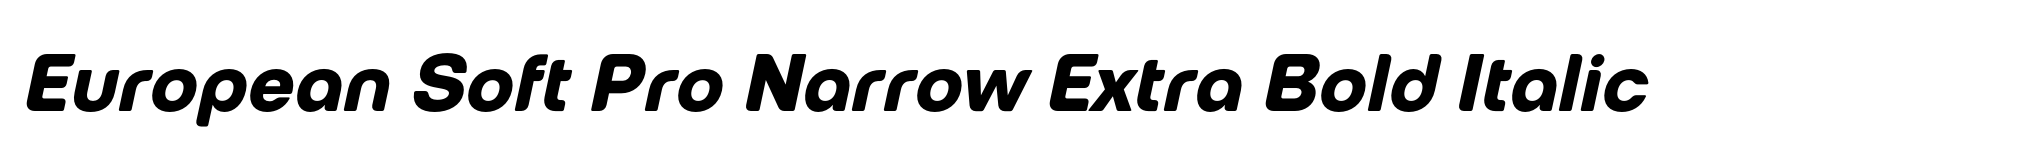 European Soft Pro Narrow Extra Bold Italic image